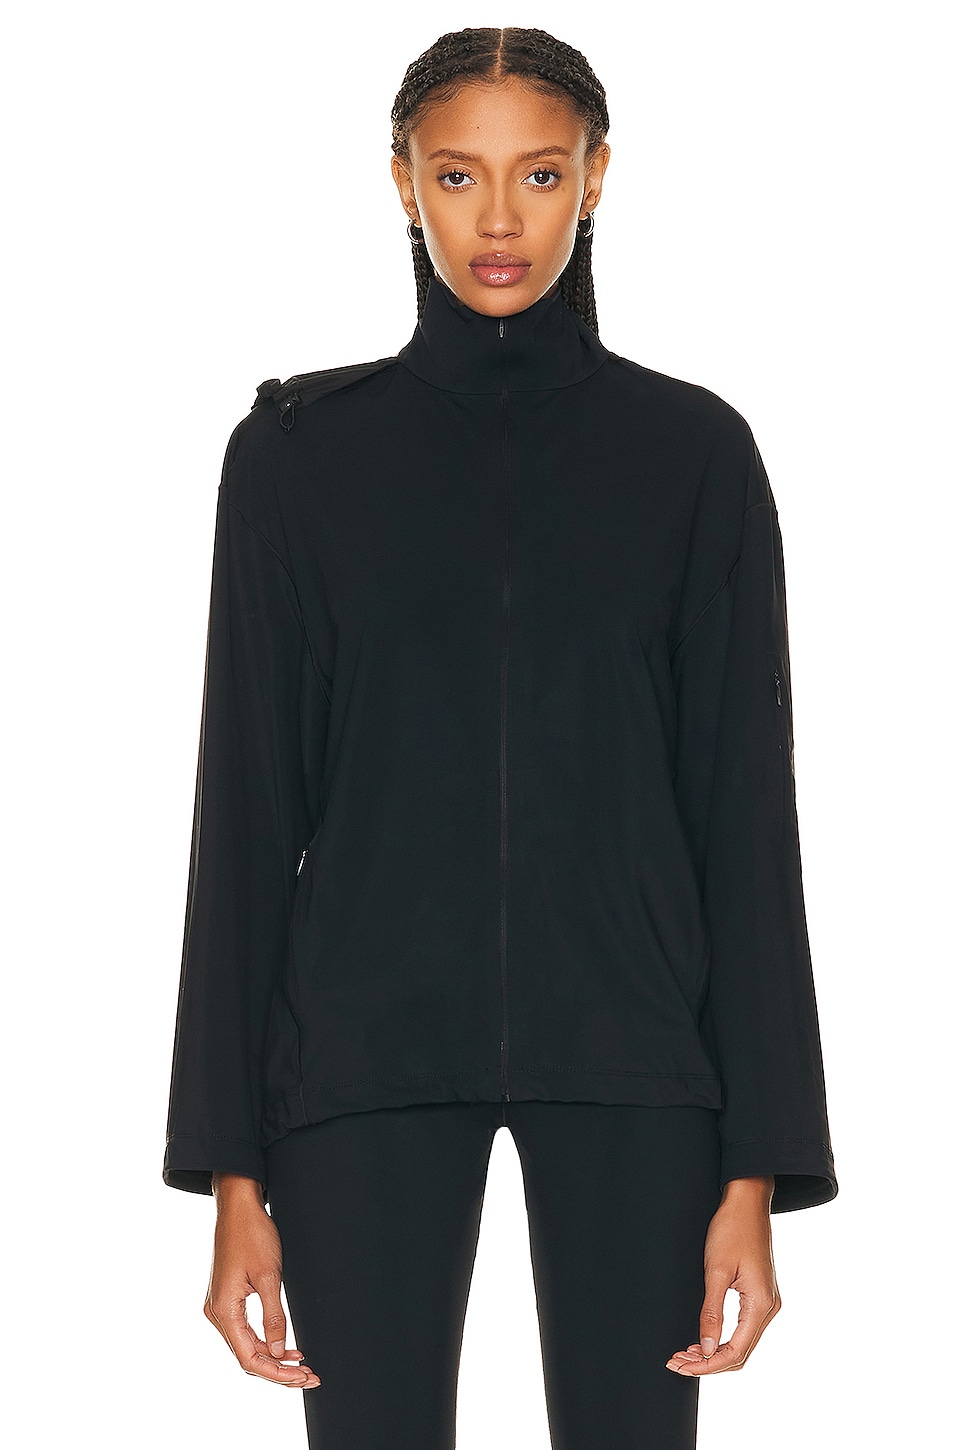 Image 1 of The Row Tamari Sweater in Black